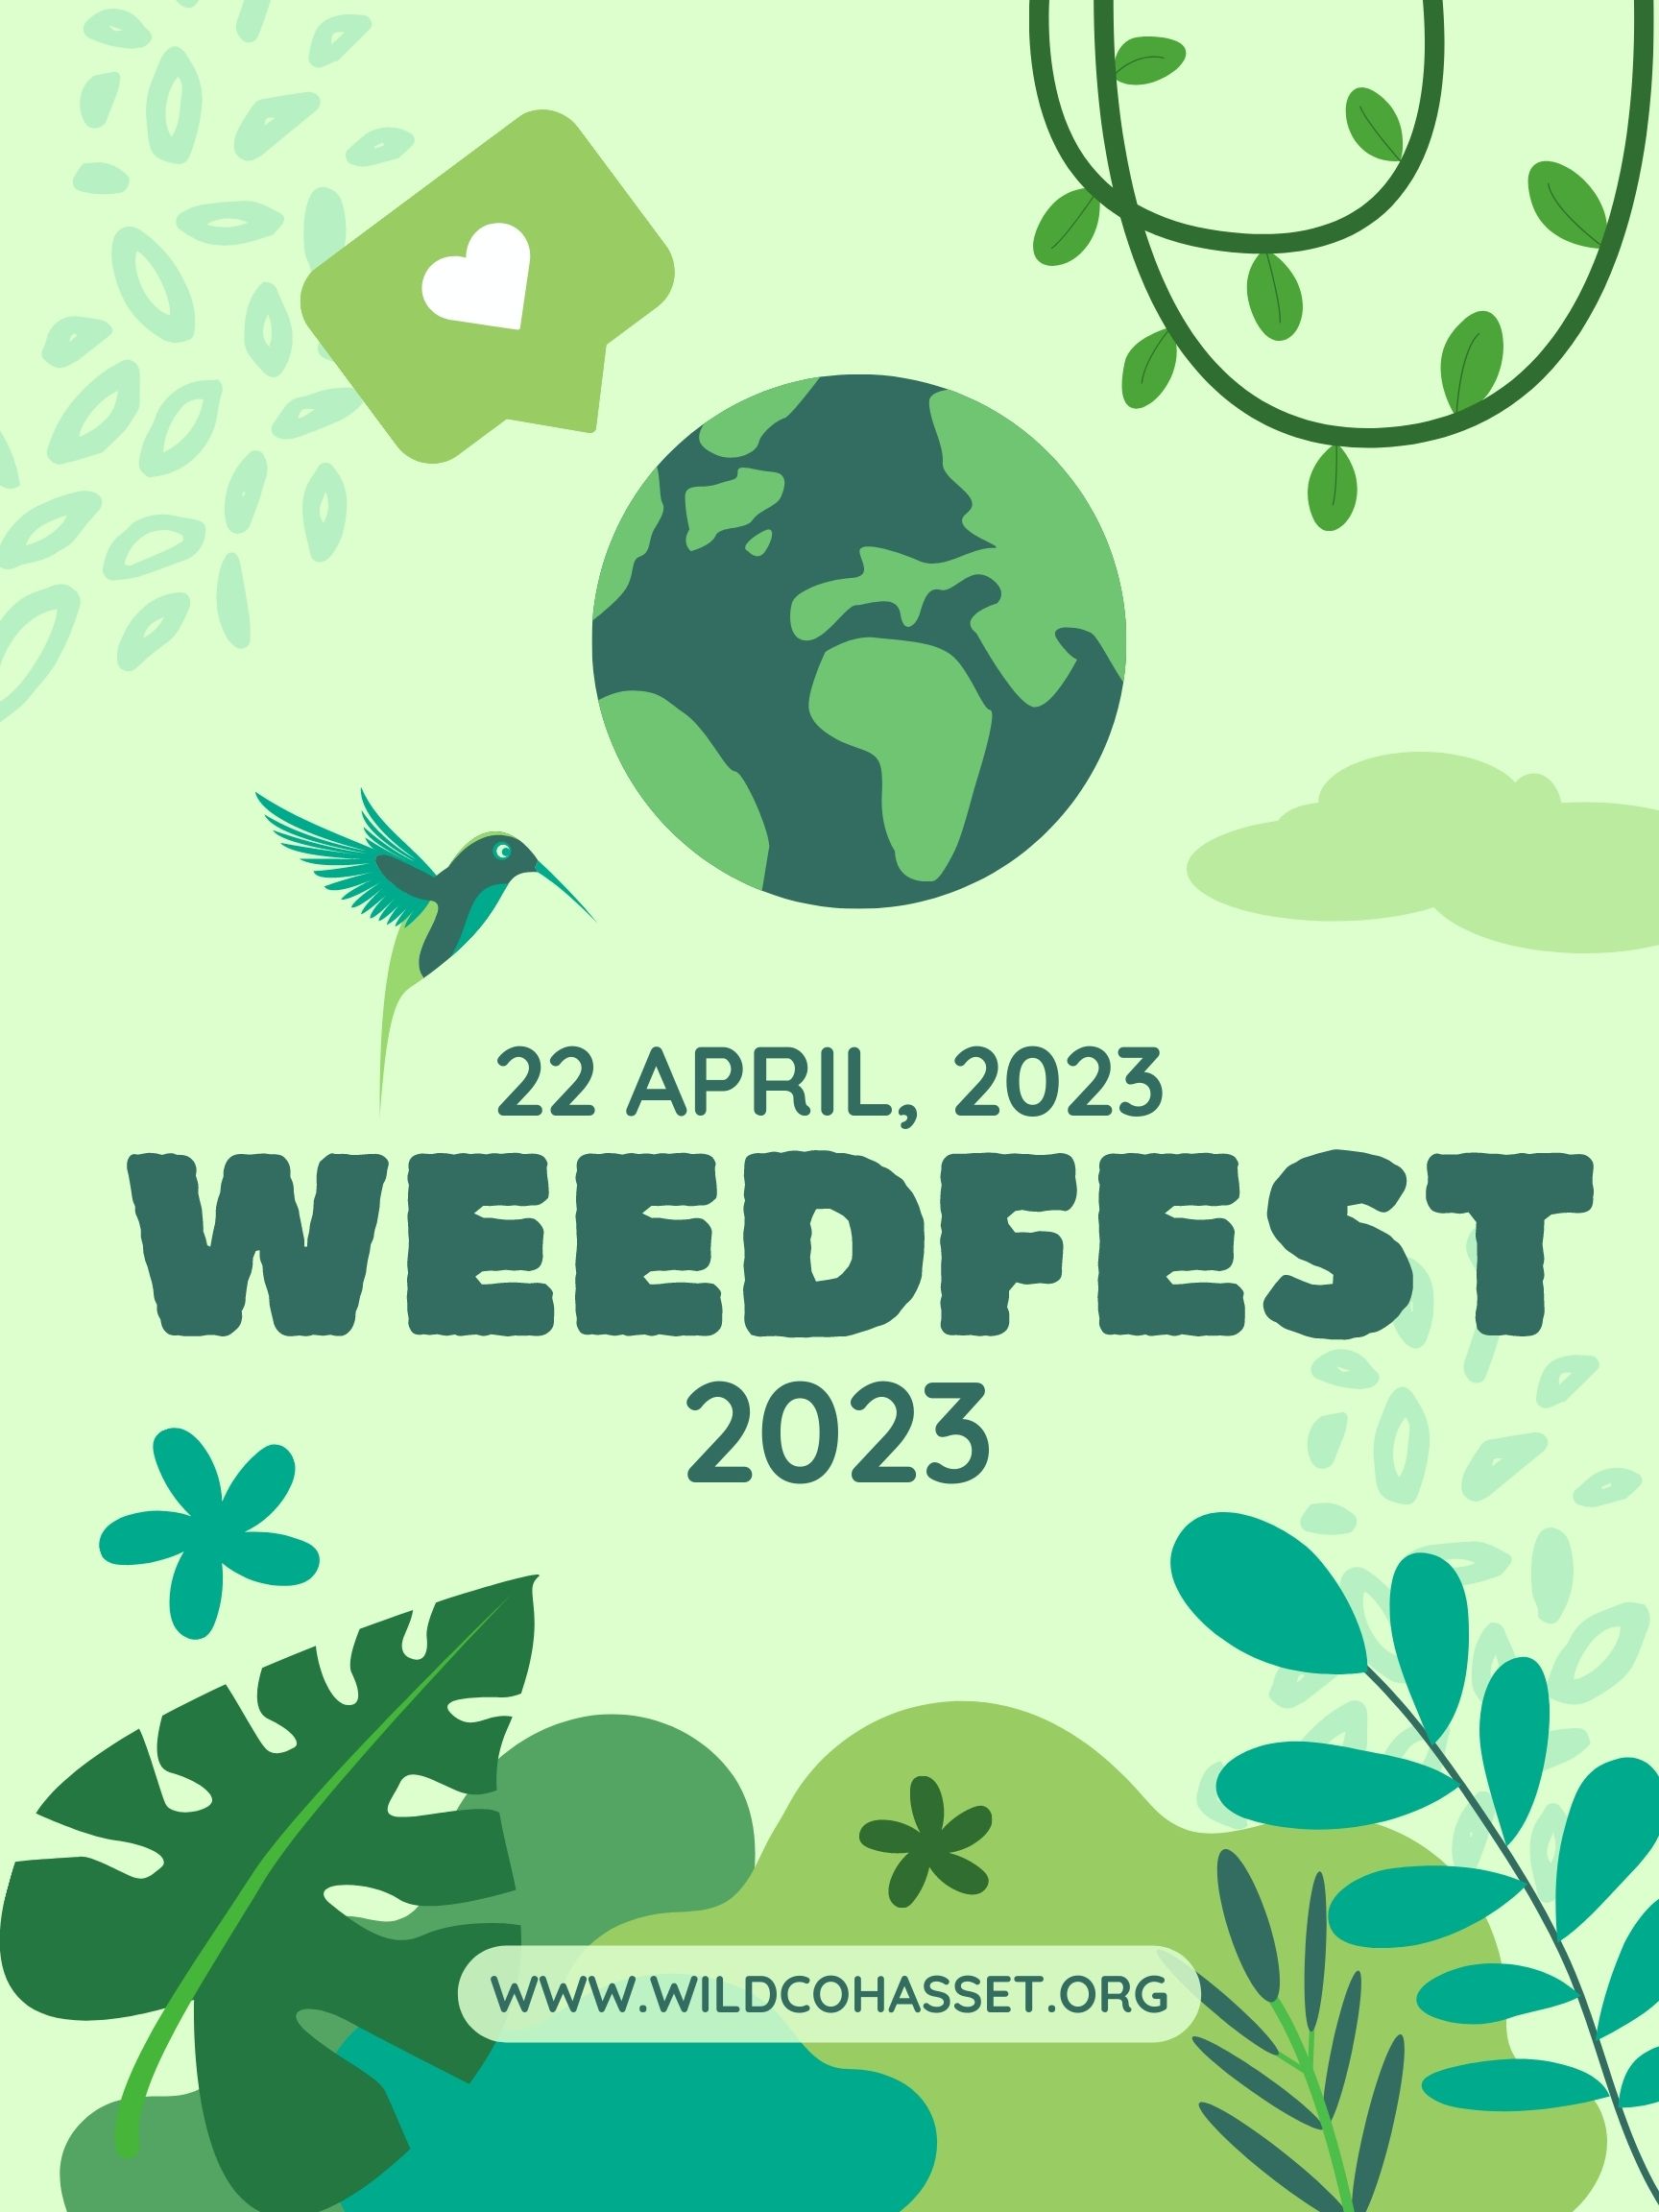 Cohasset Weedfest 2023